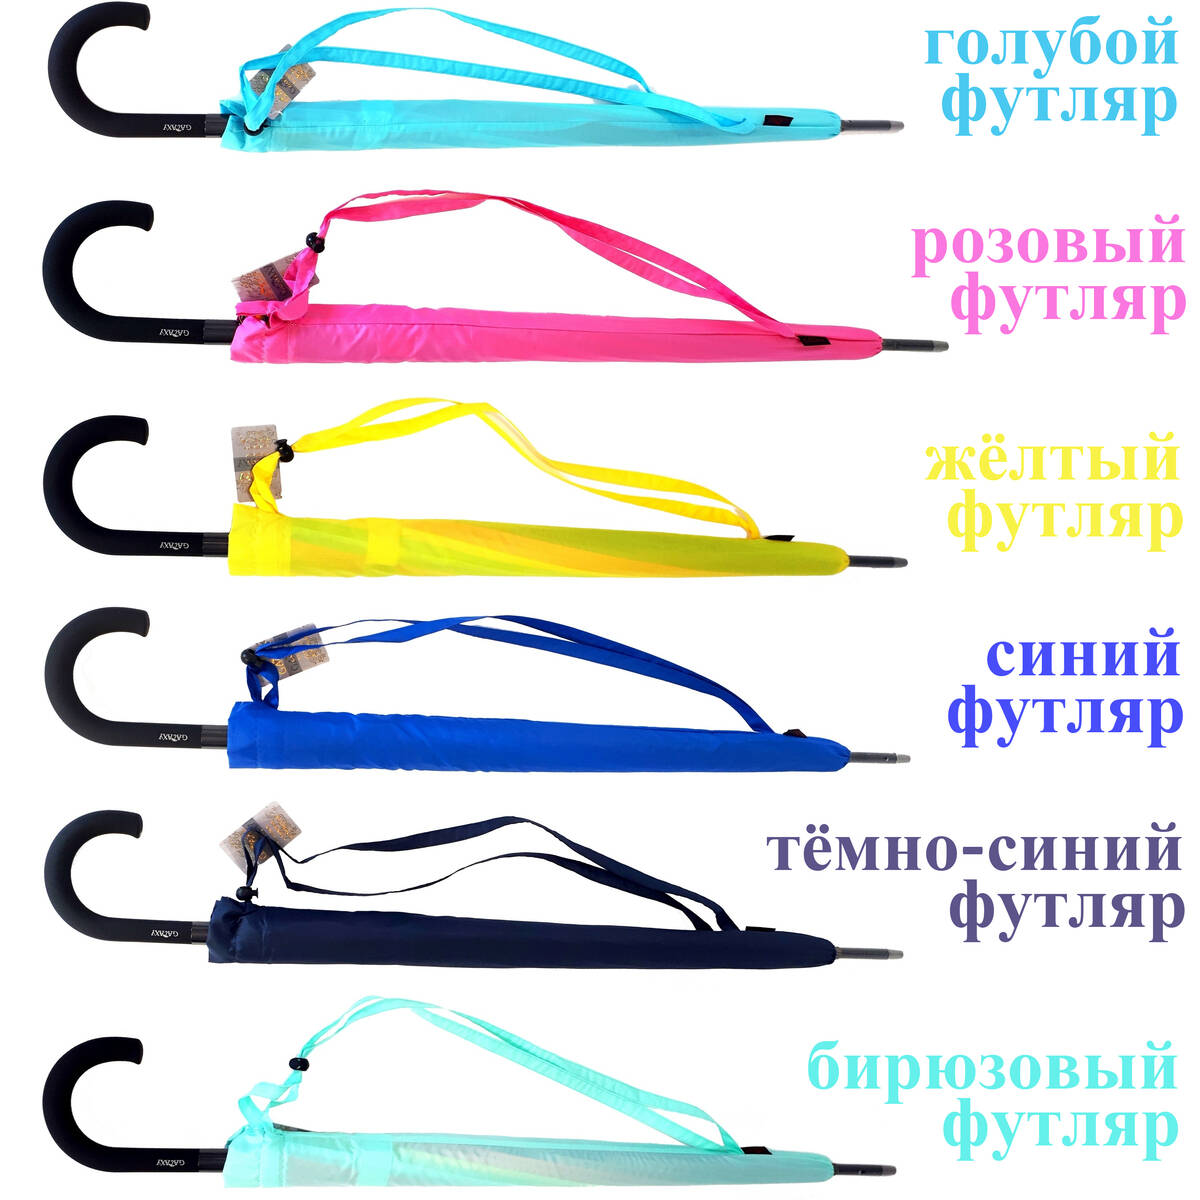 6 вариантов расцветок футляров для зонта радуги